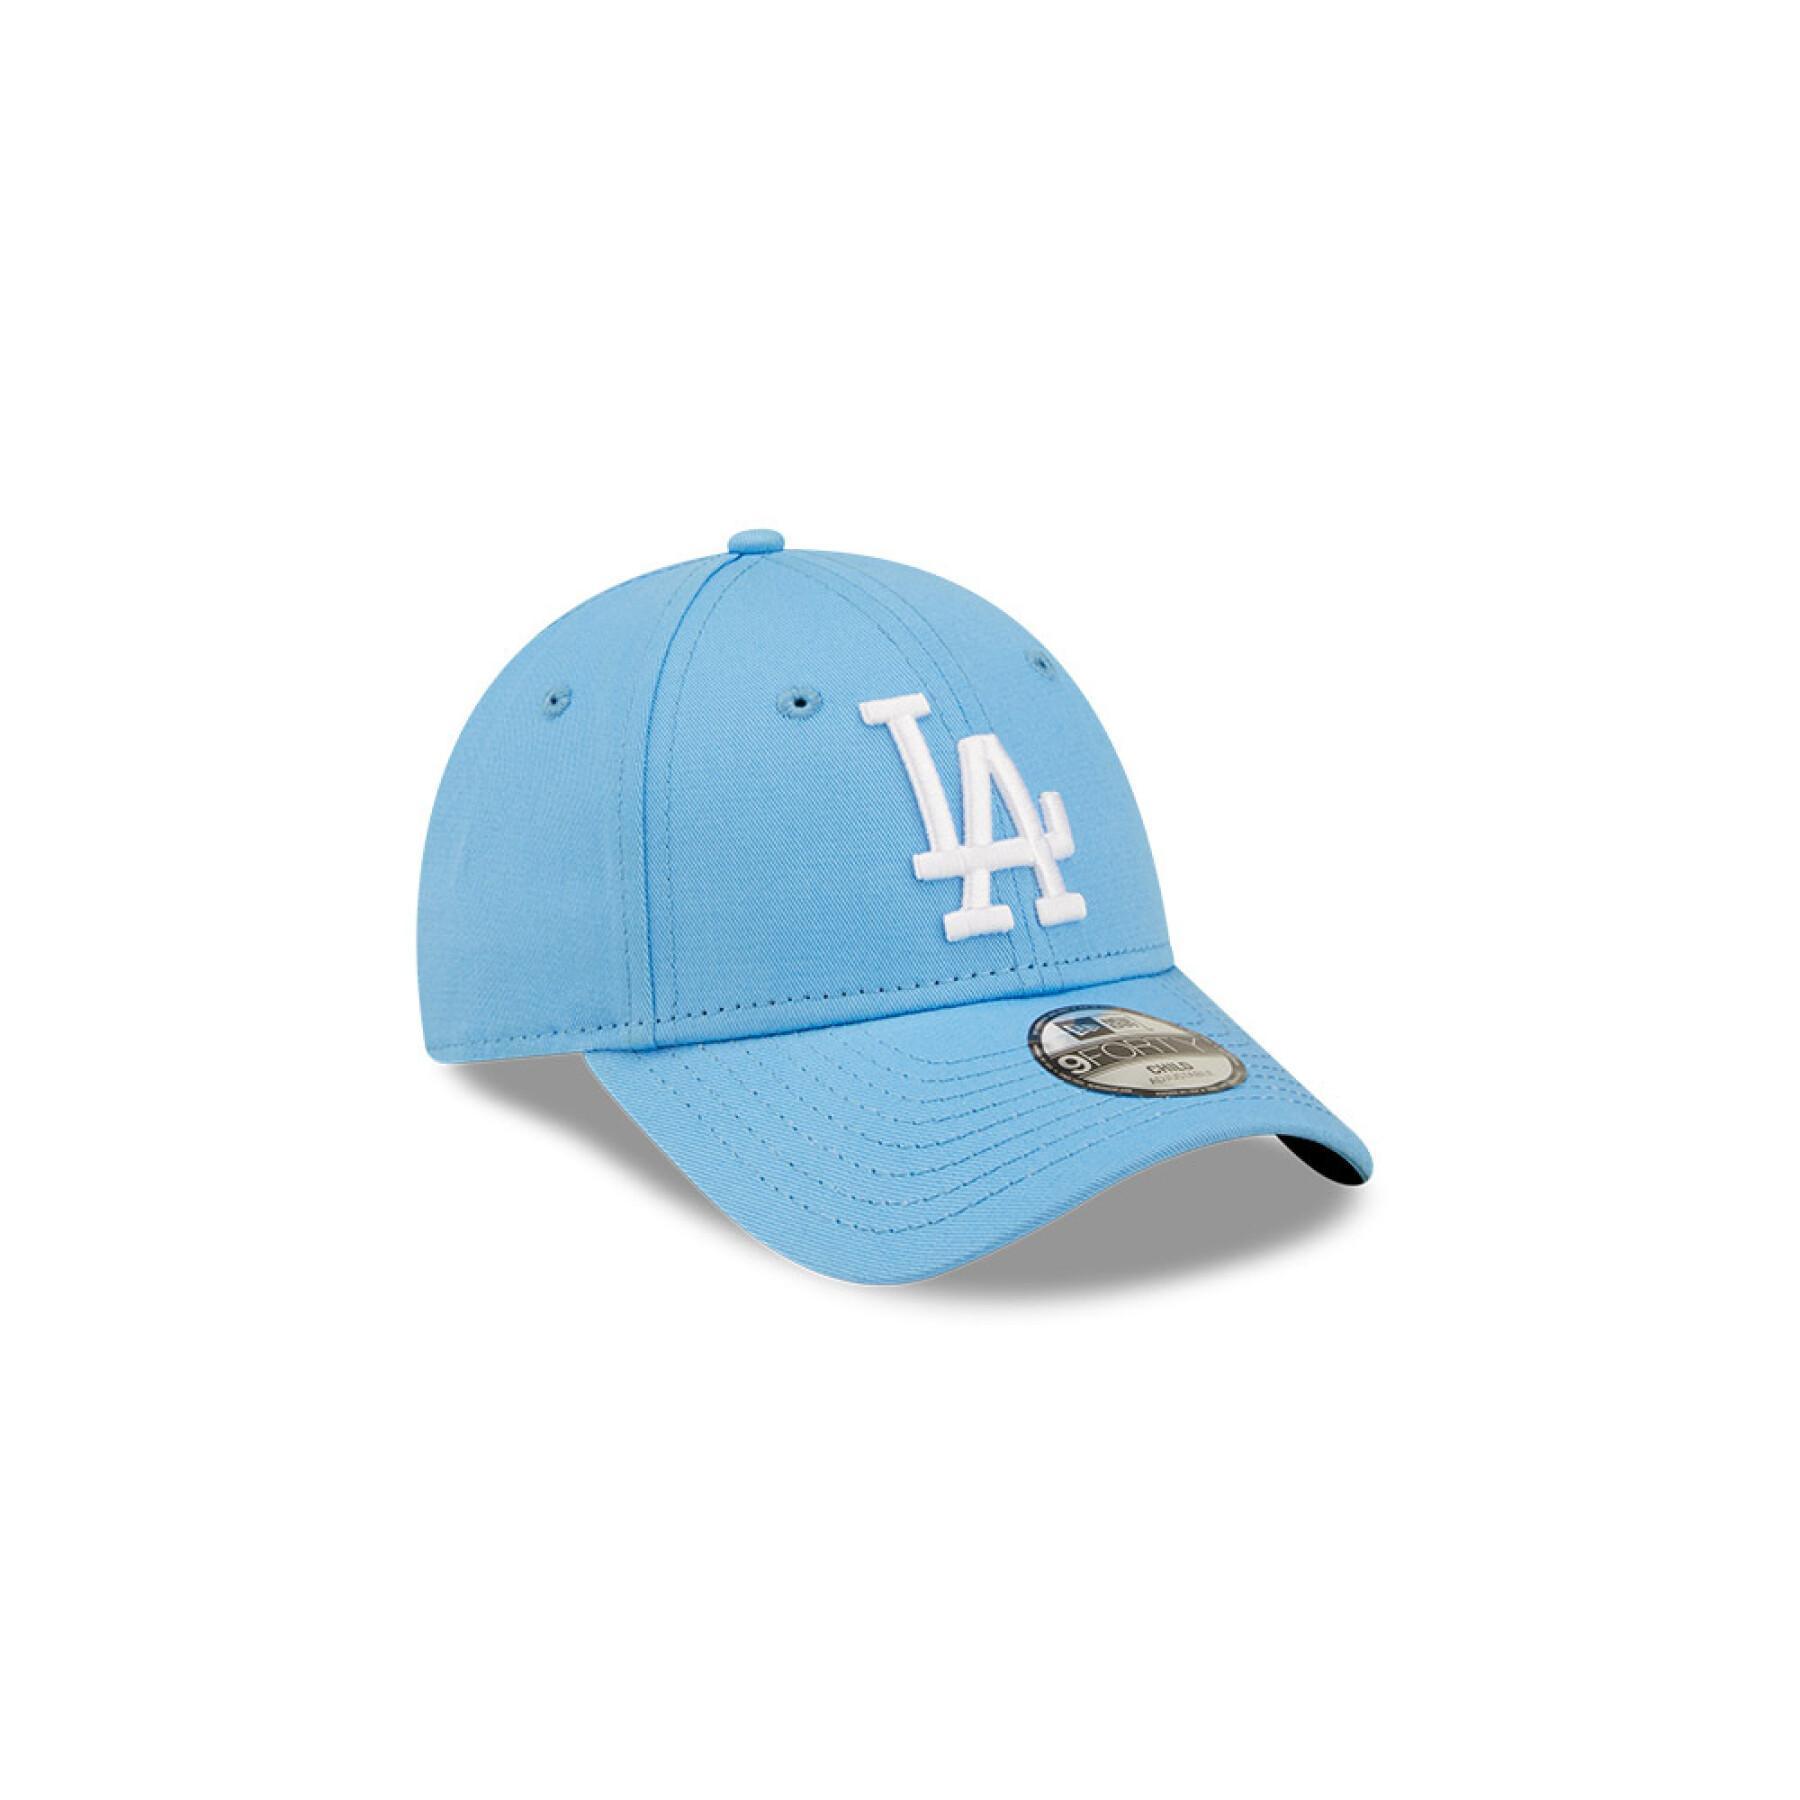 Children's cap Los Angeles Dodgers Essential